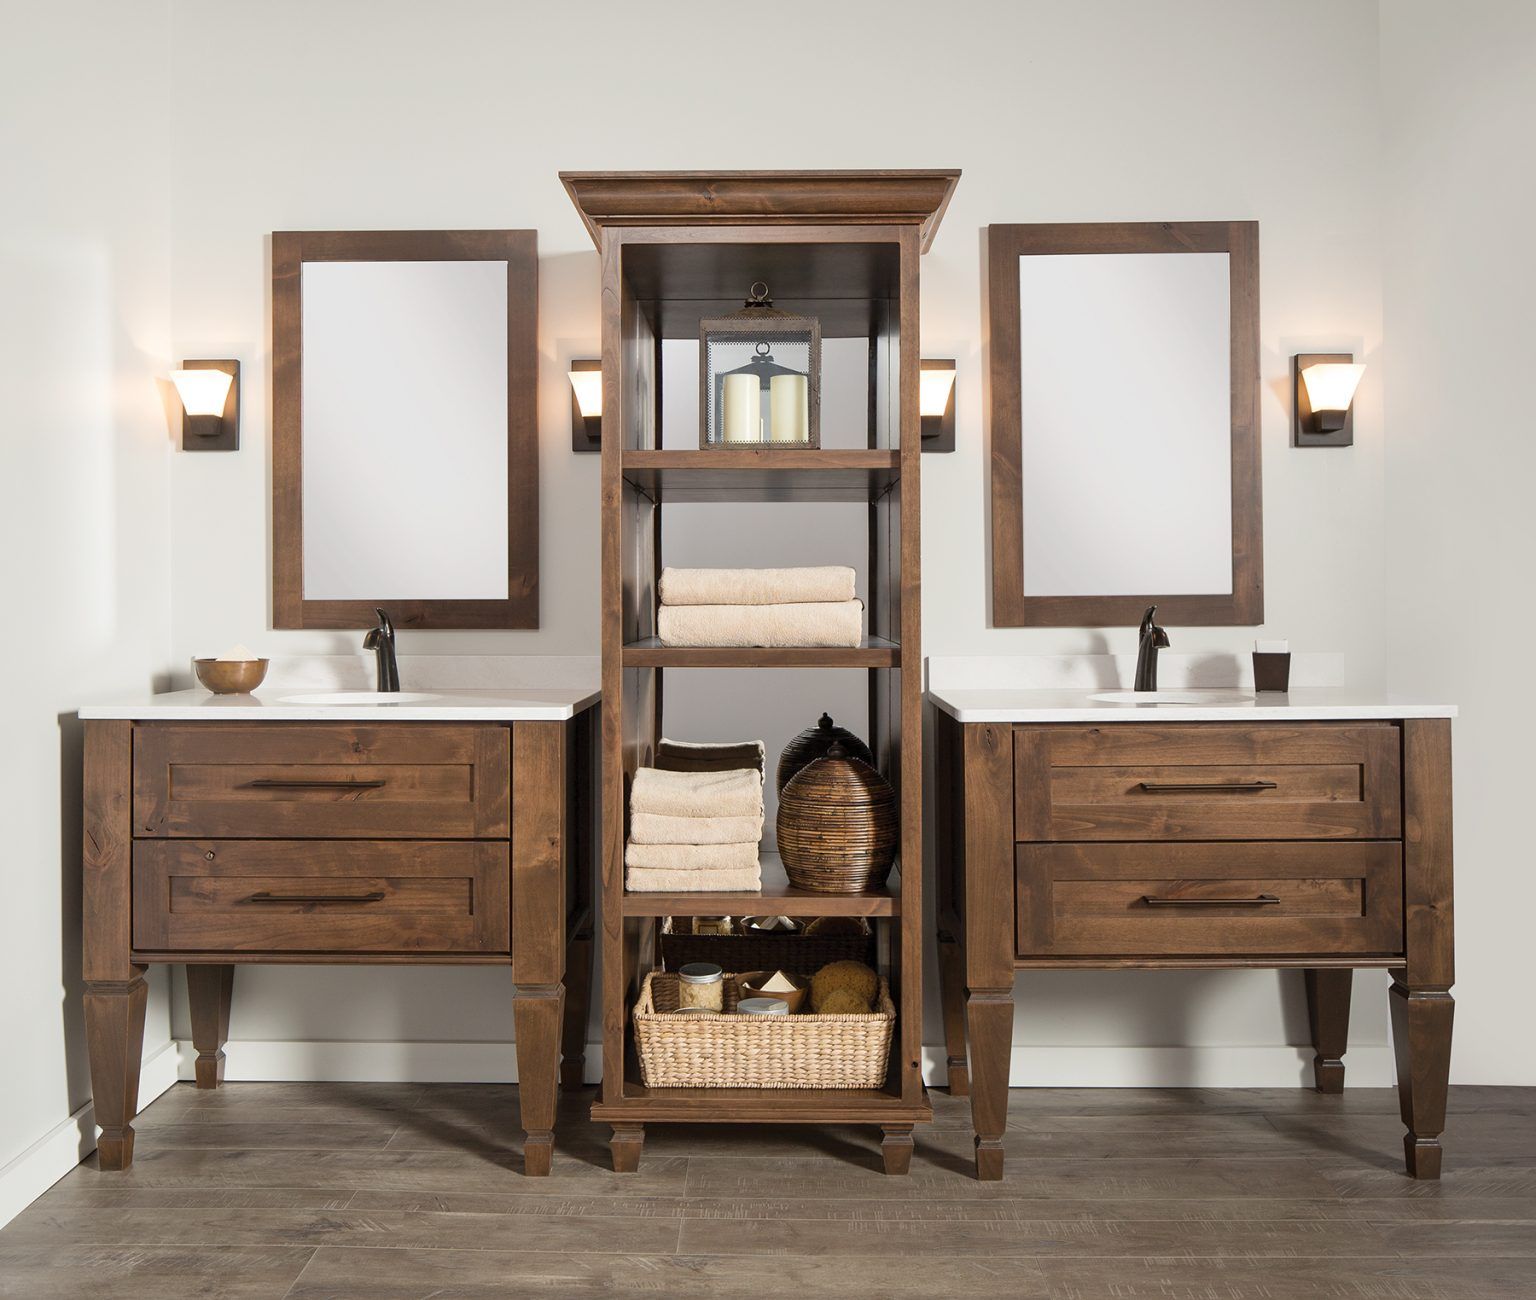 Bathroom With Wooden Furniture — Littleton, CO — Build A Bath LLC